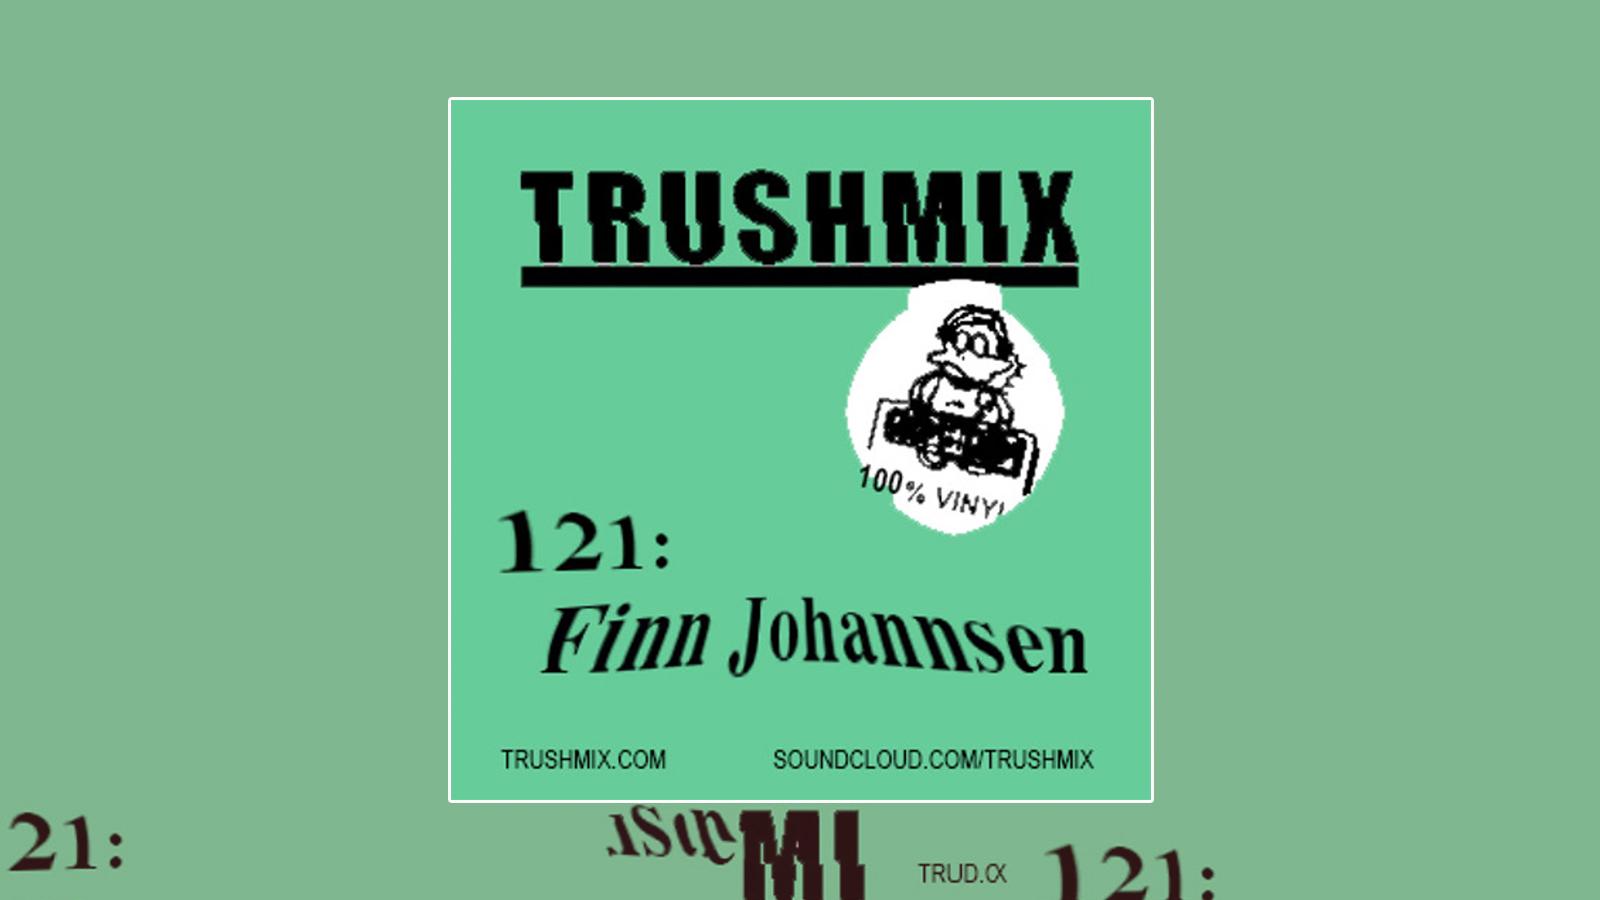 MdW-Finn-Johannsen-22052018